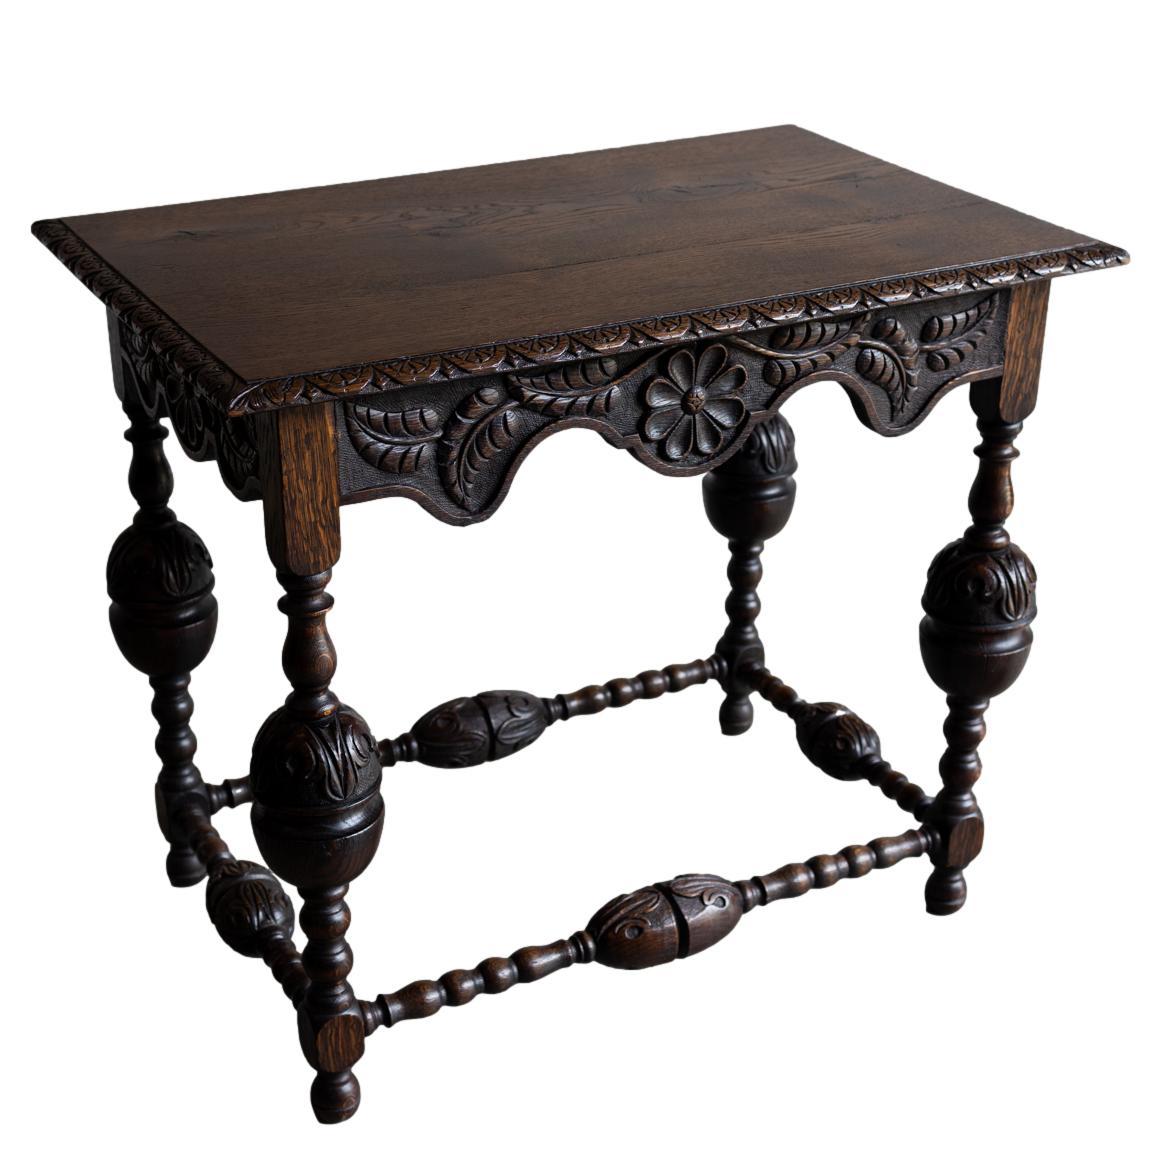 Ein Tudor-Stil geschnitzt Eiche Center Table, die rechteckige Platte mit einem floralen Fächer und Abnäher geformte Kante, über einem geformten Schürze mit einem Gänseblümchen Medaillon und geschnitzten Blättern zu allen vier Seiten geschnitzt, mit